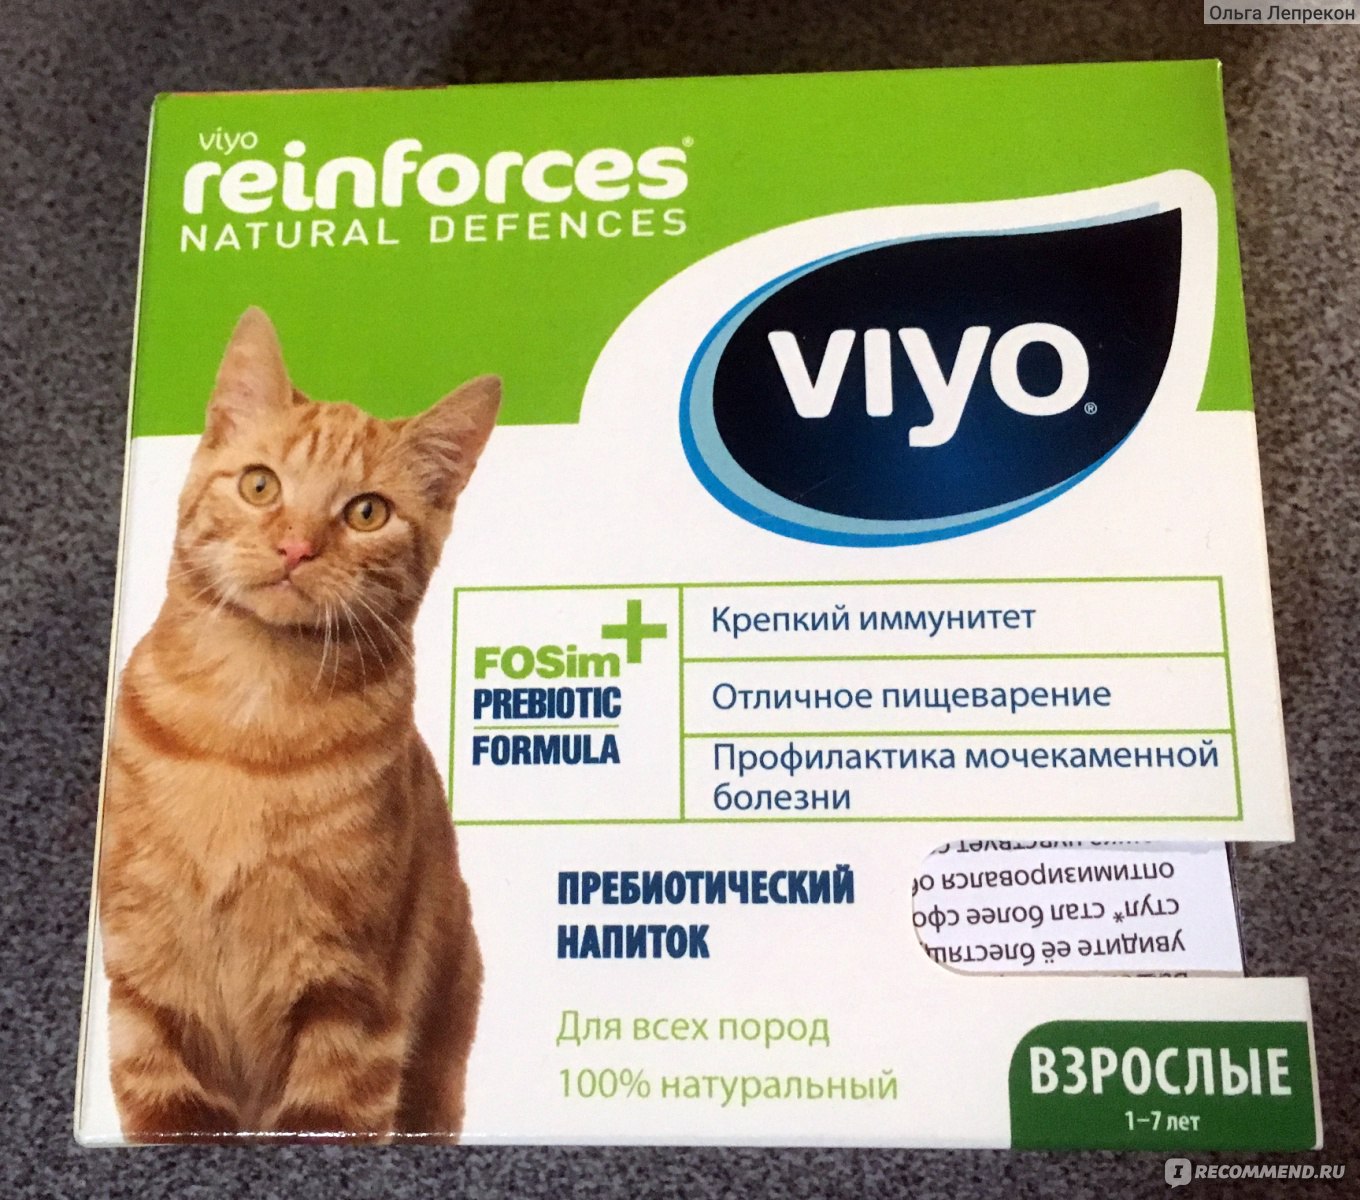 Viyo для кошек: инструкция по применению, состав